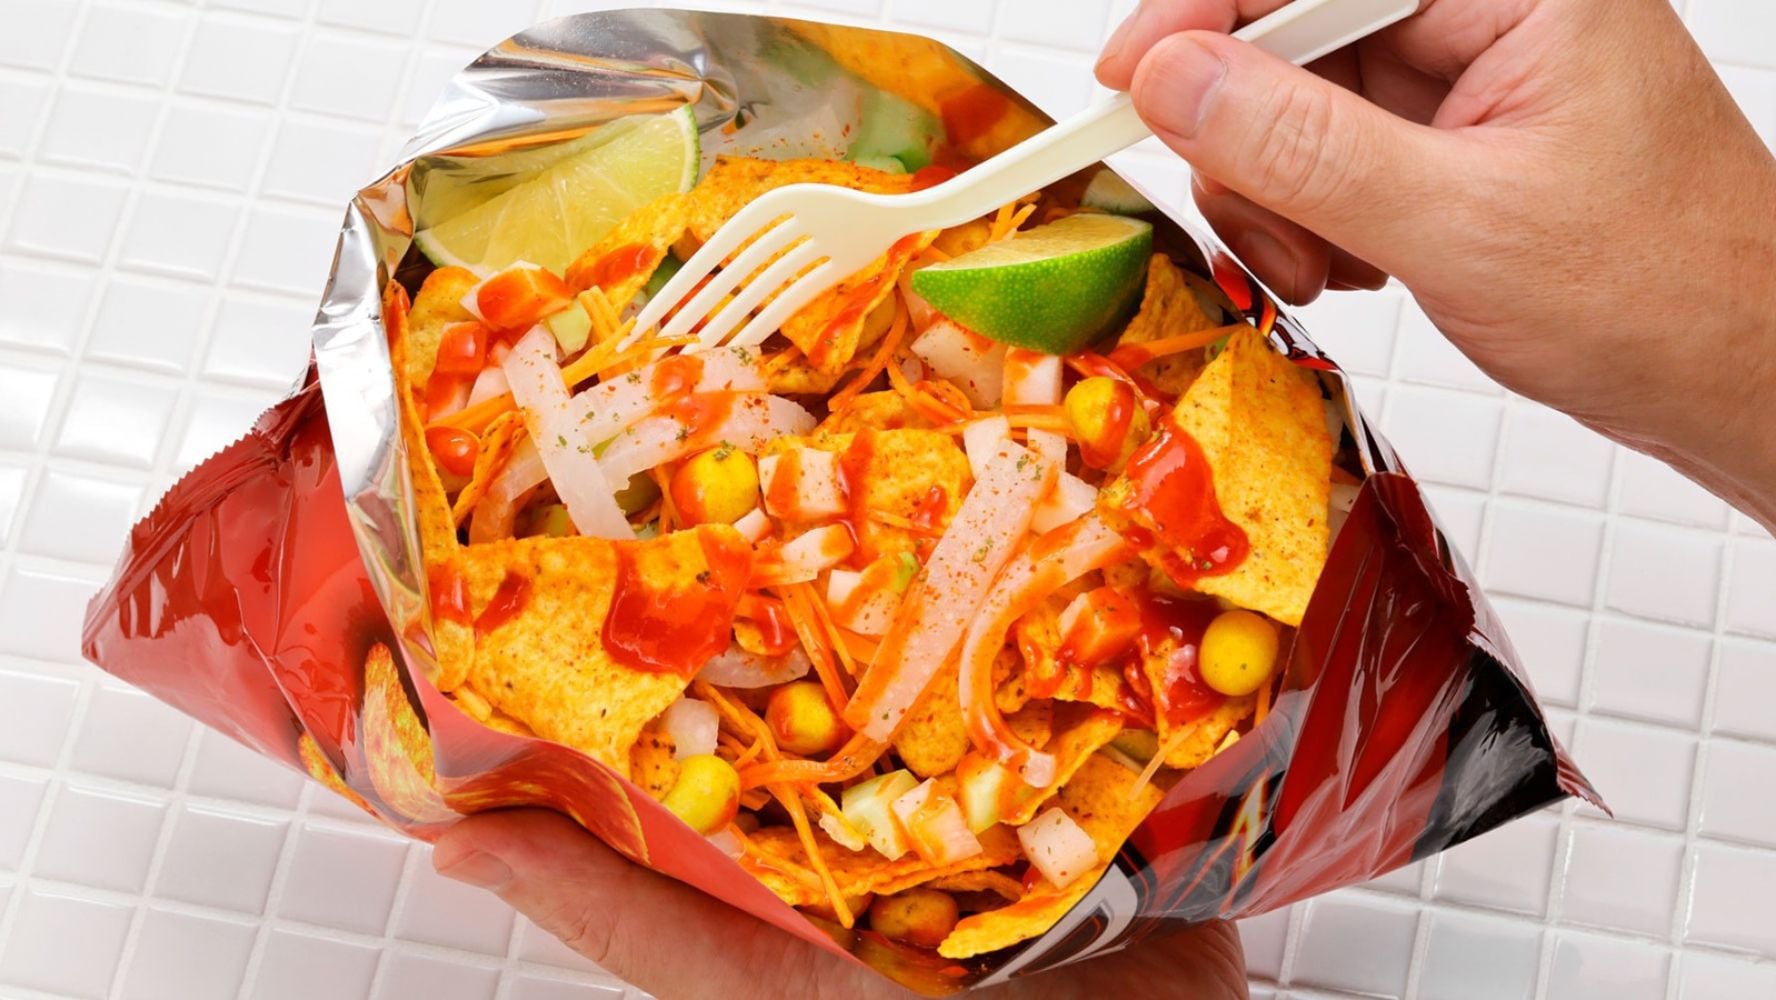 Los 'dorilocos' se suelen preparan dentro de la bolsa de una fritura.(Foto: Shutterstock)